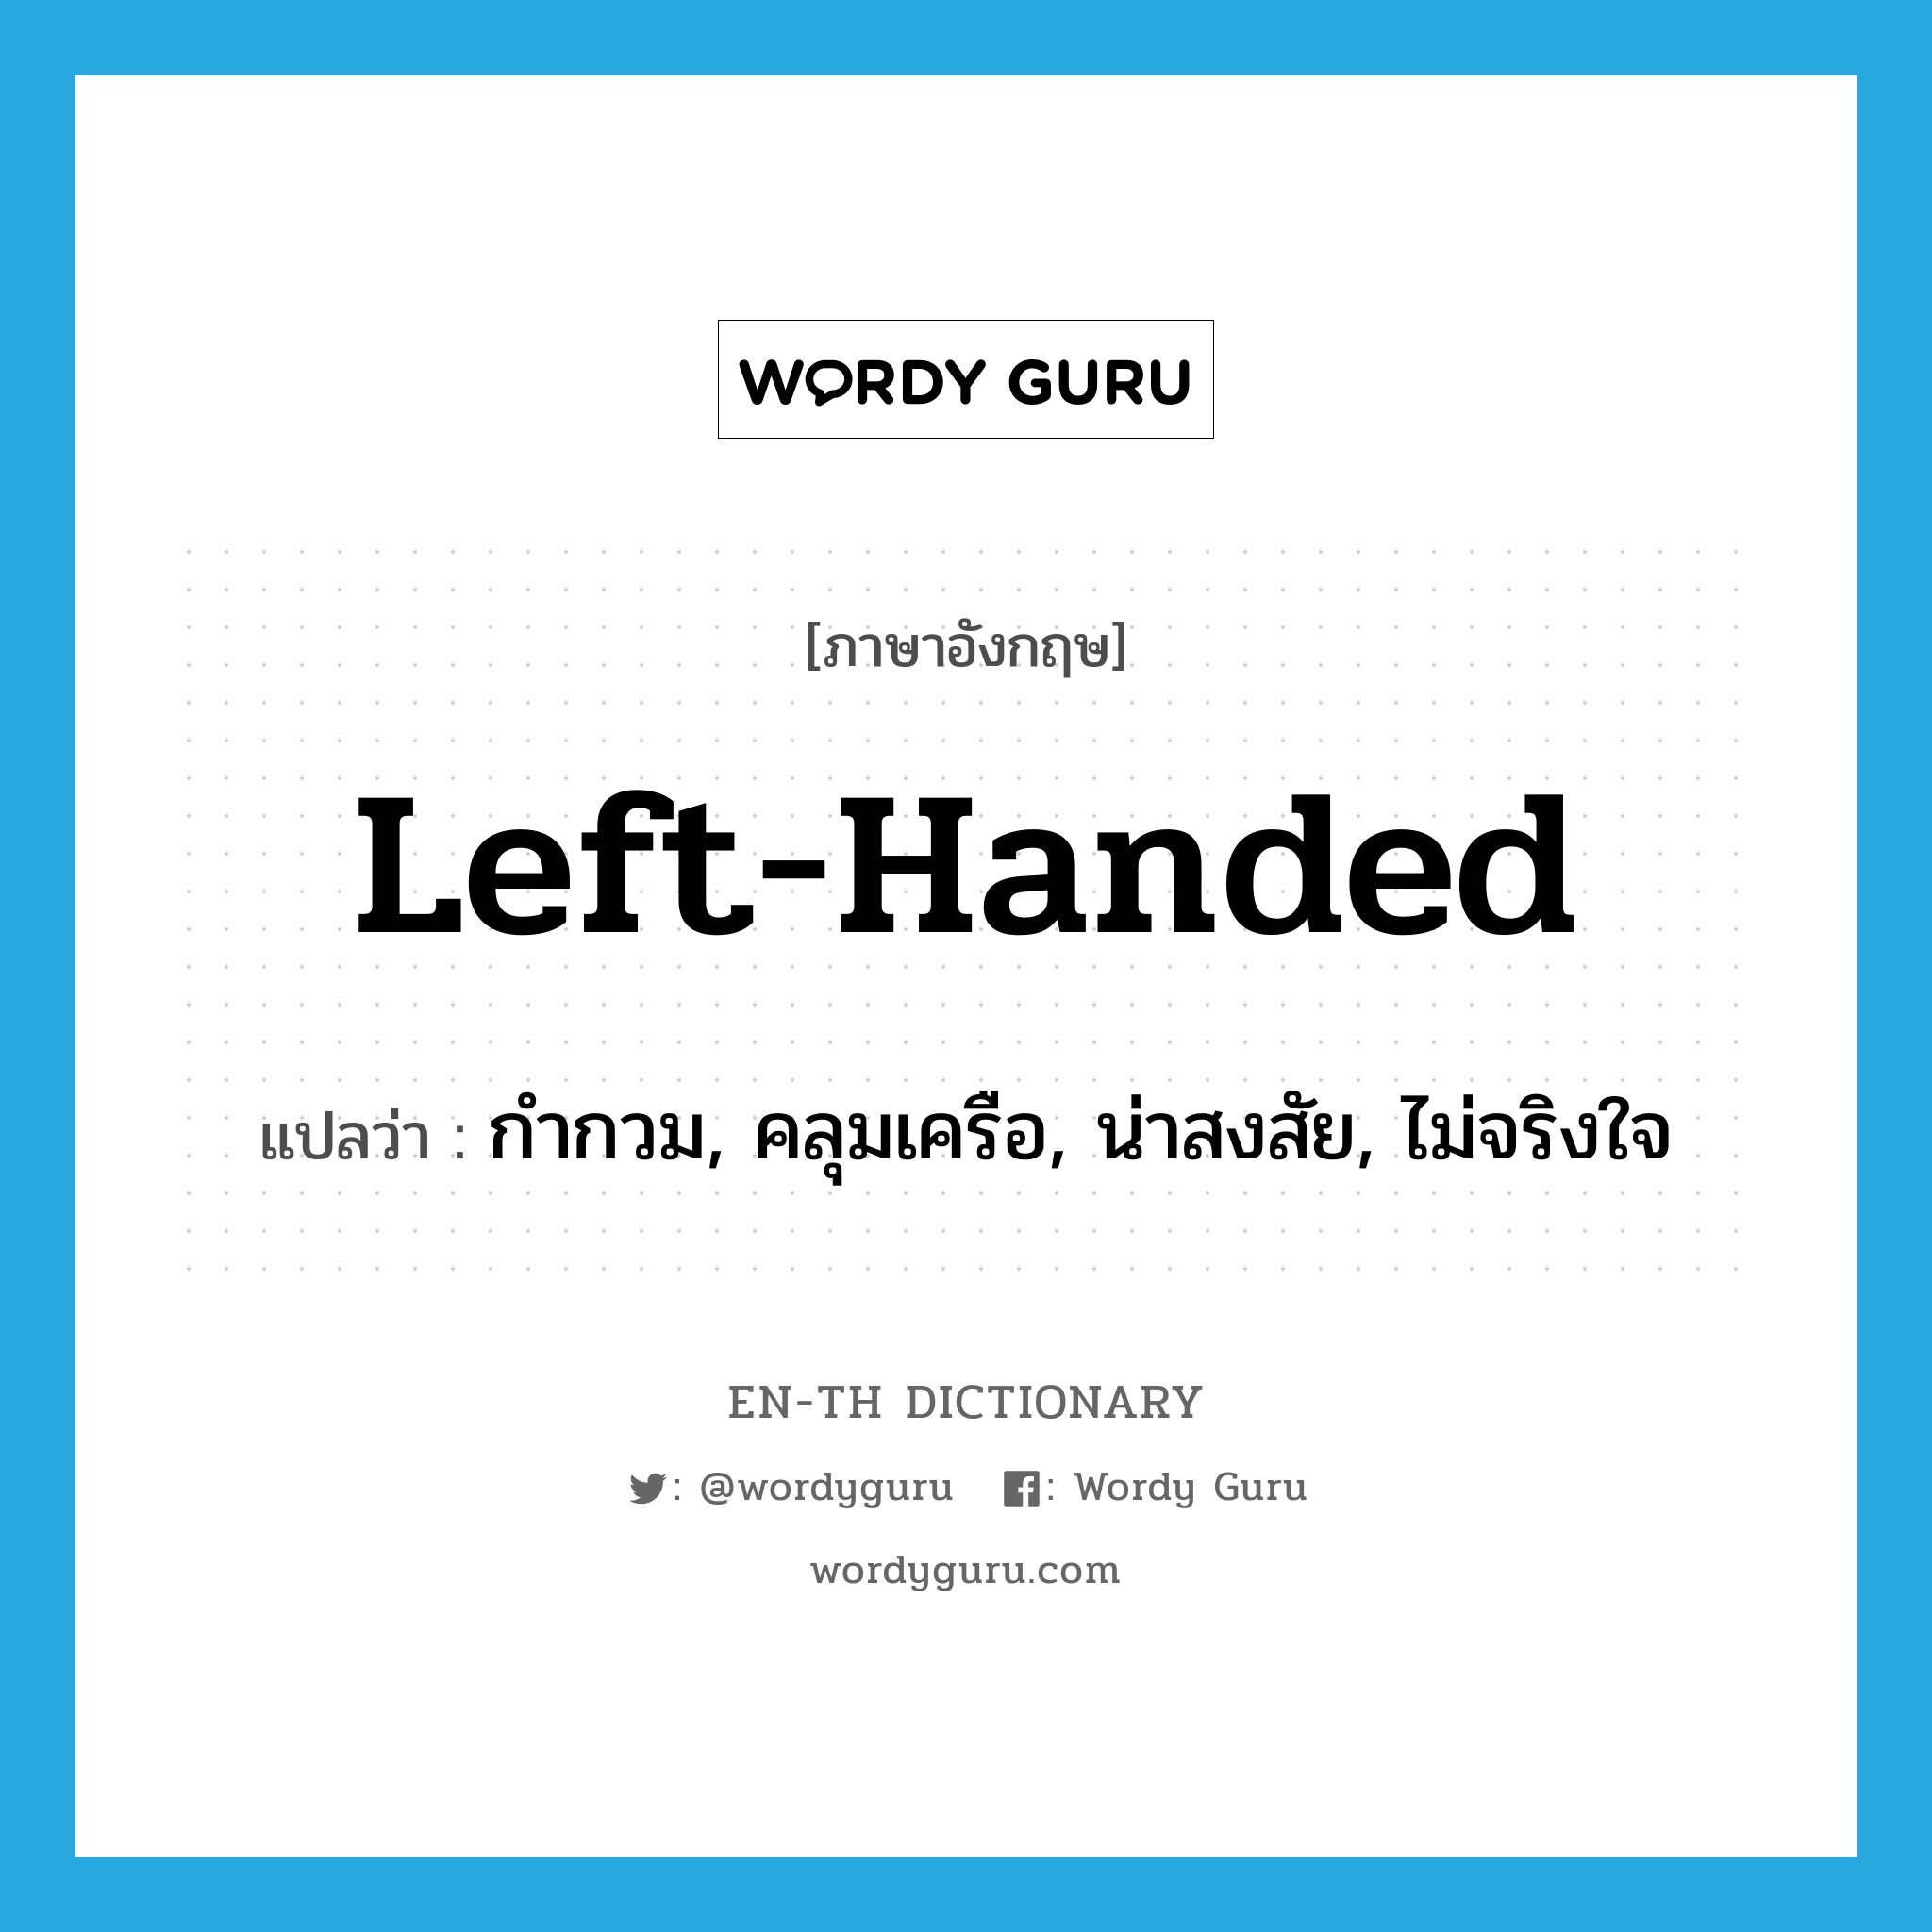 left-handed แปลว่า?, คำศัพท์ภาษาอังกฤษ left-handed แปลว่า กำกวม, คลุมเครือ, น่าสงสัย, ไม่จริงใจ ประเภท ADJ หมวด ADJ